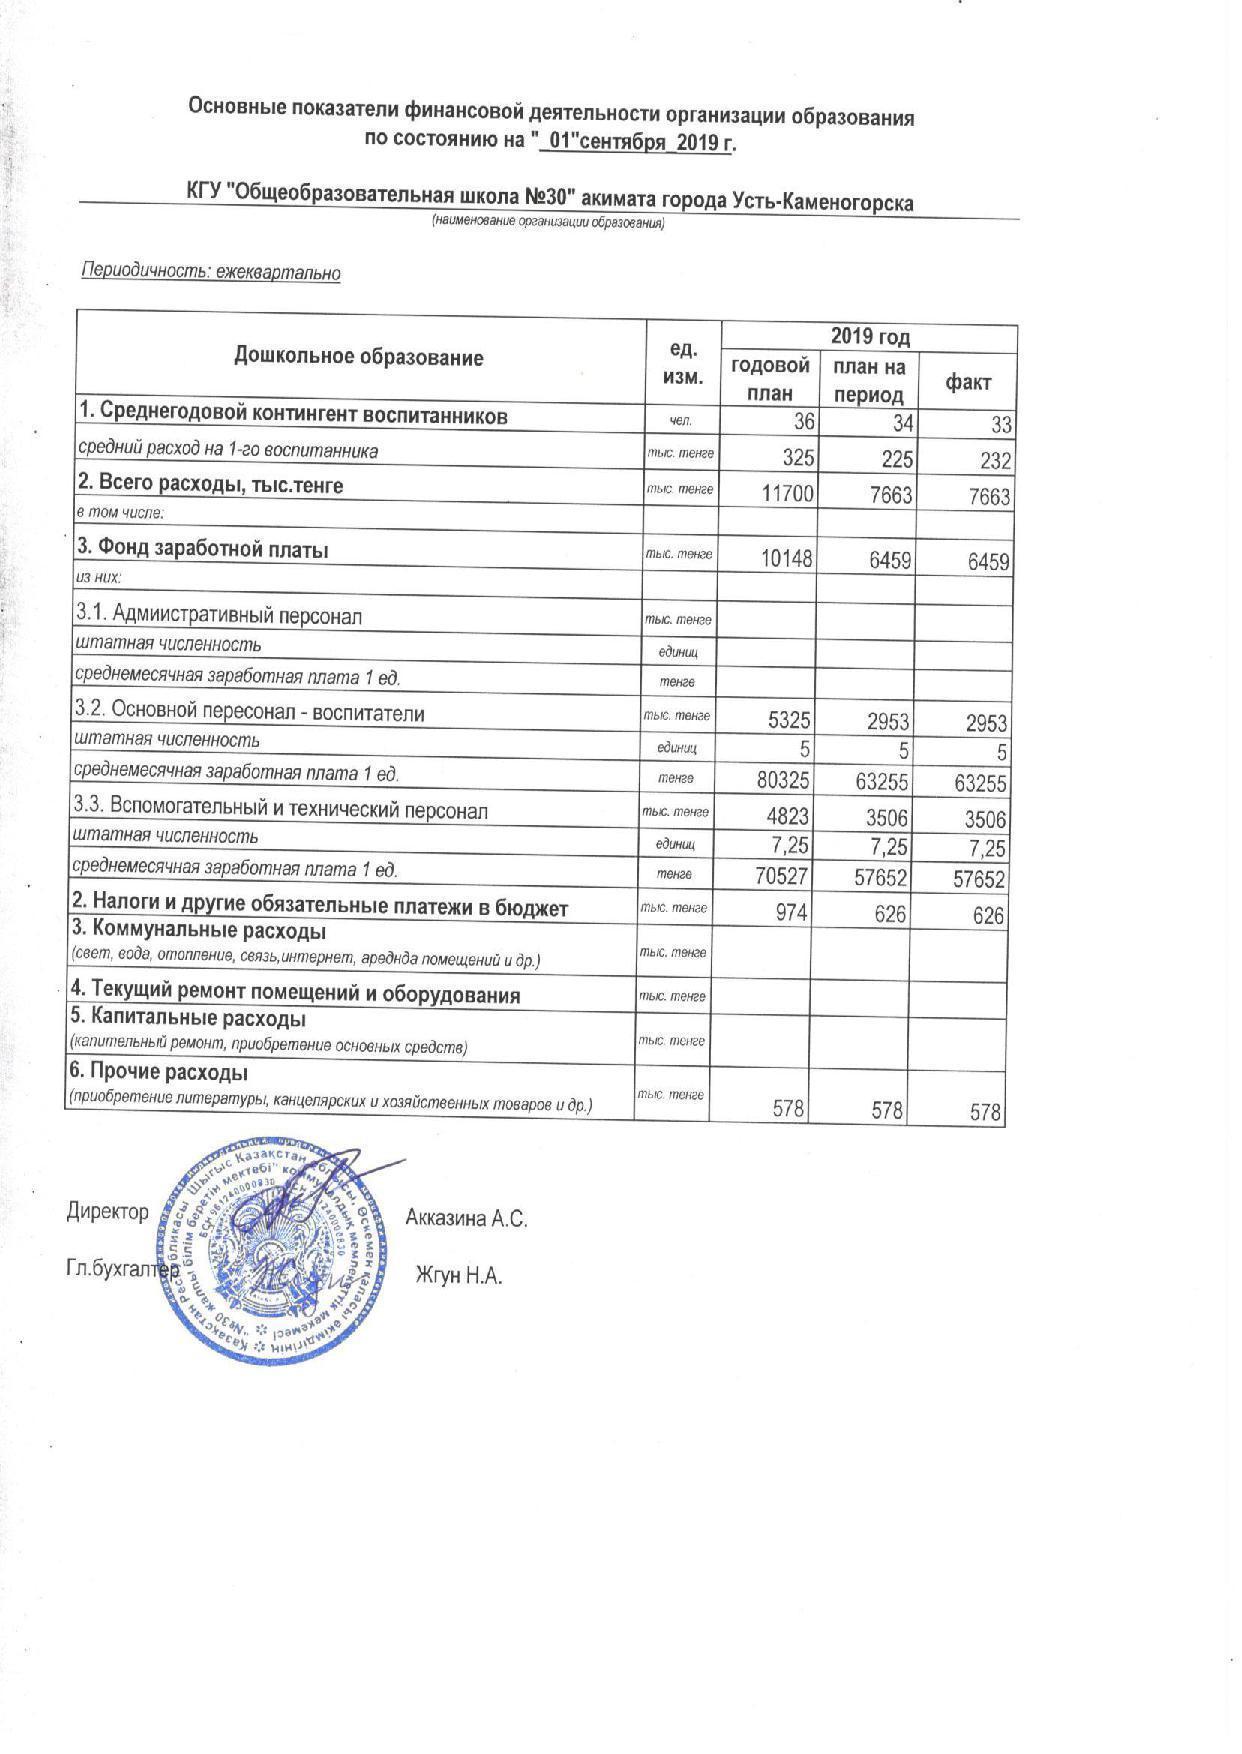 Основные показатели финансовой деятельности на 01.09.2019 мини центр